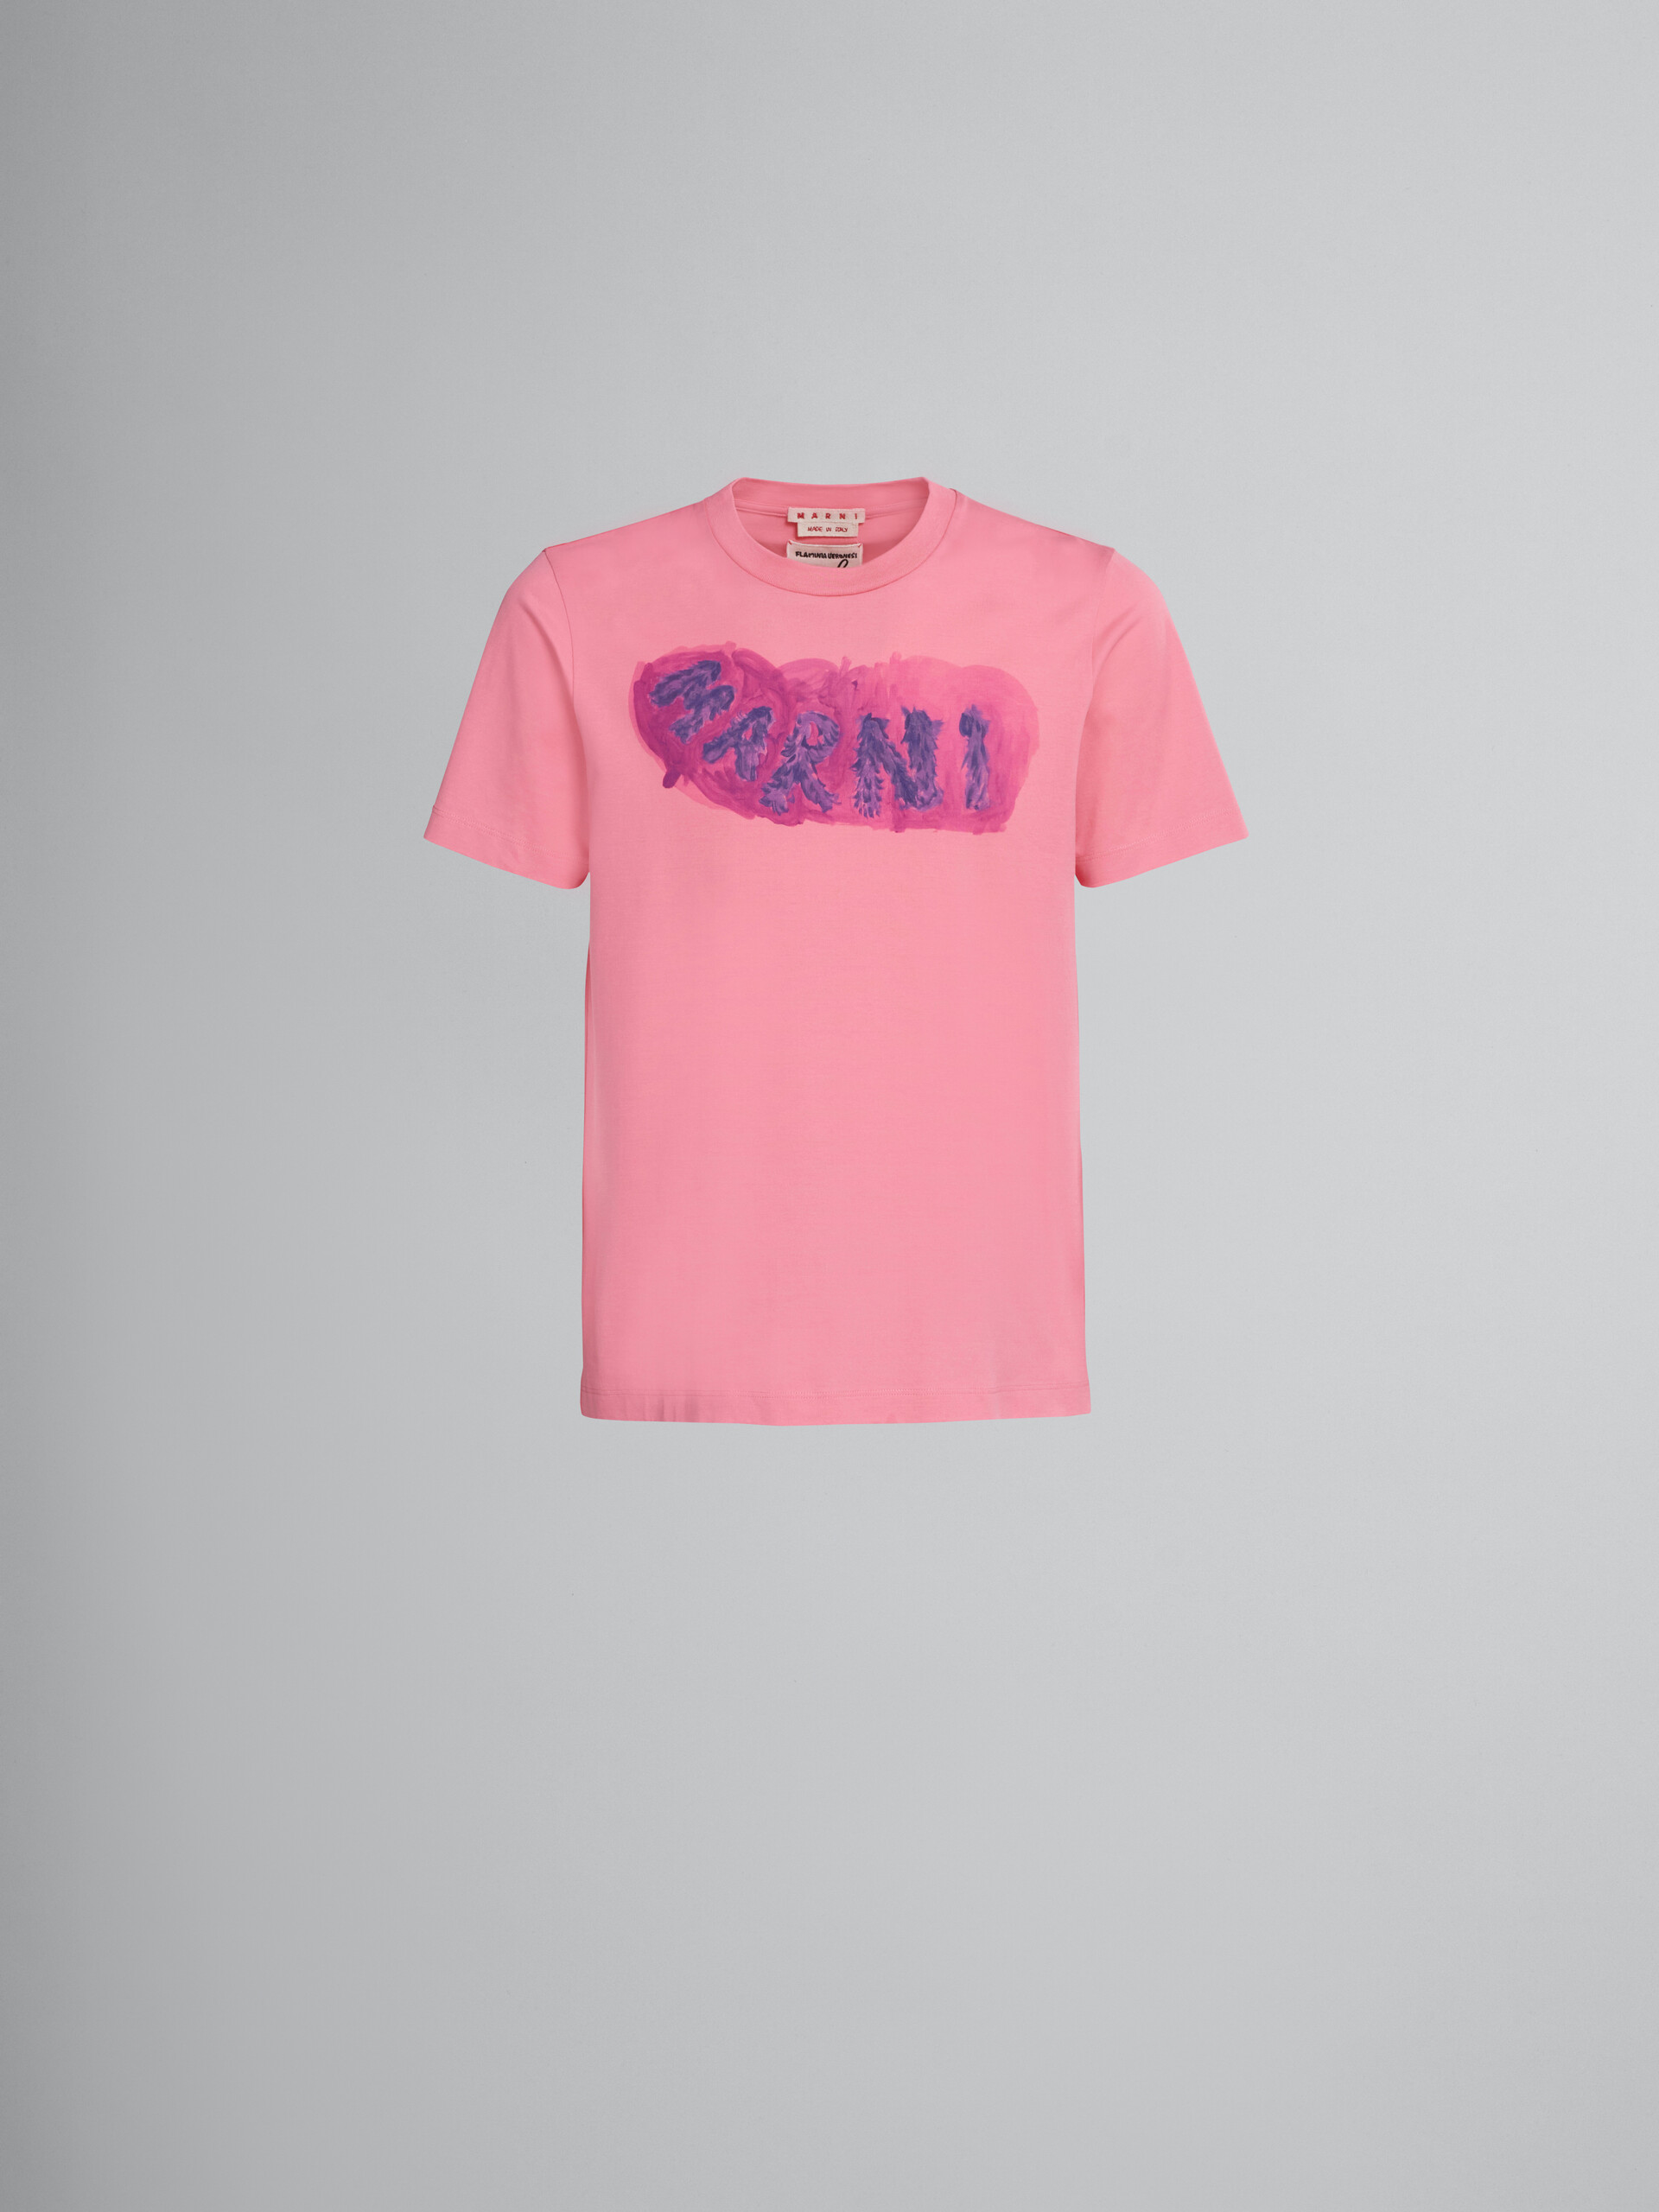 Rosafarbenes T-Shirt aus Bio-Baumwolle mit grafischem Logo - T-shirts - Image 1